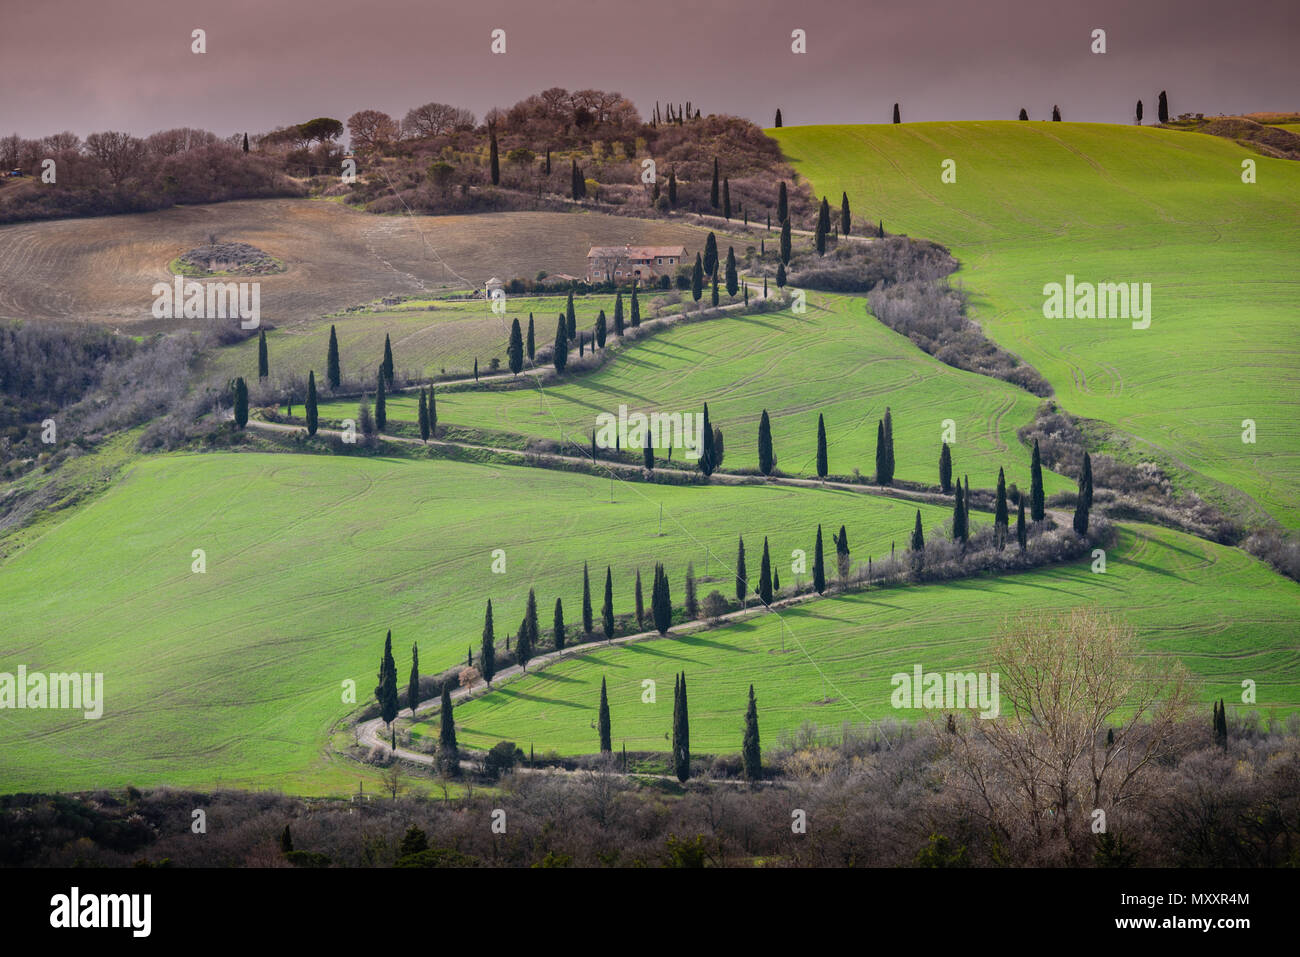 Toskana Landschaft, Zig Zag kurvenreiche Straße mit Zypressen auf einem sanften Hügel mit grünen Wiesen gesäumt, La Foce, Val d'Orcia, Toskana, Italien Stockfoto